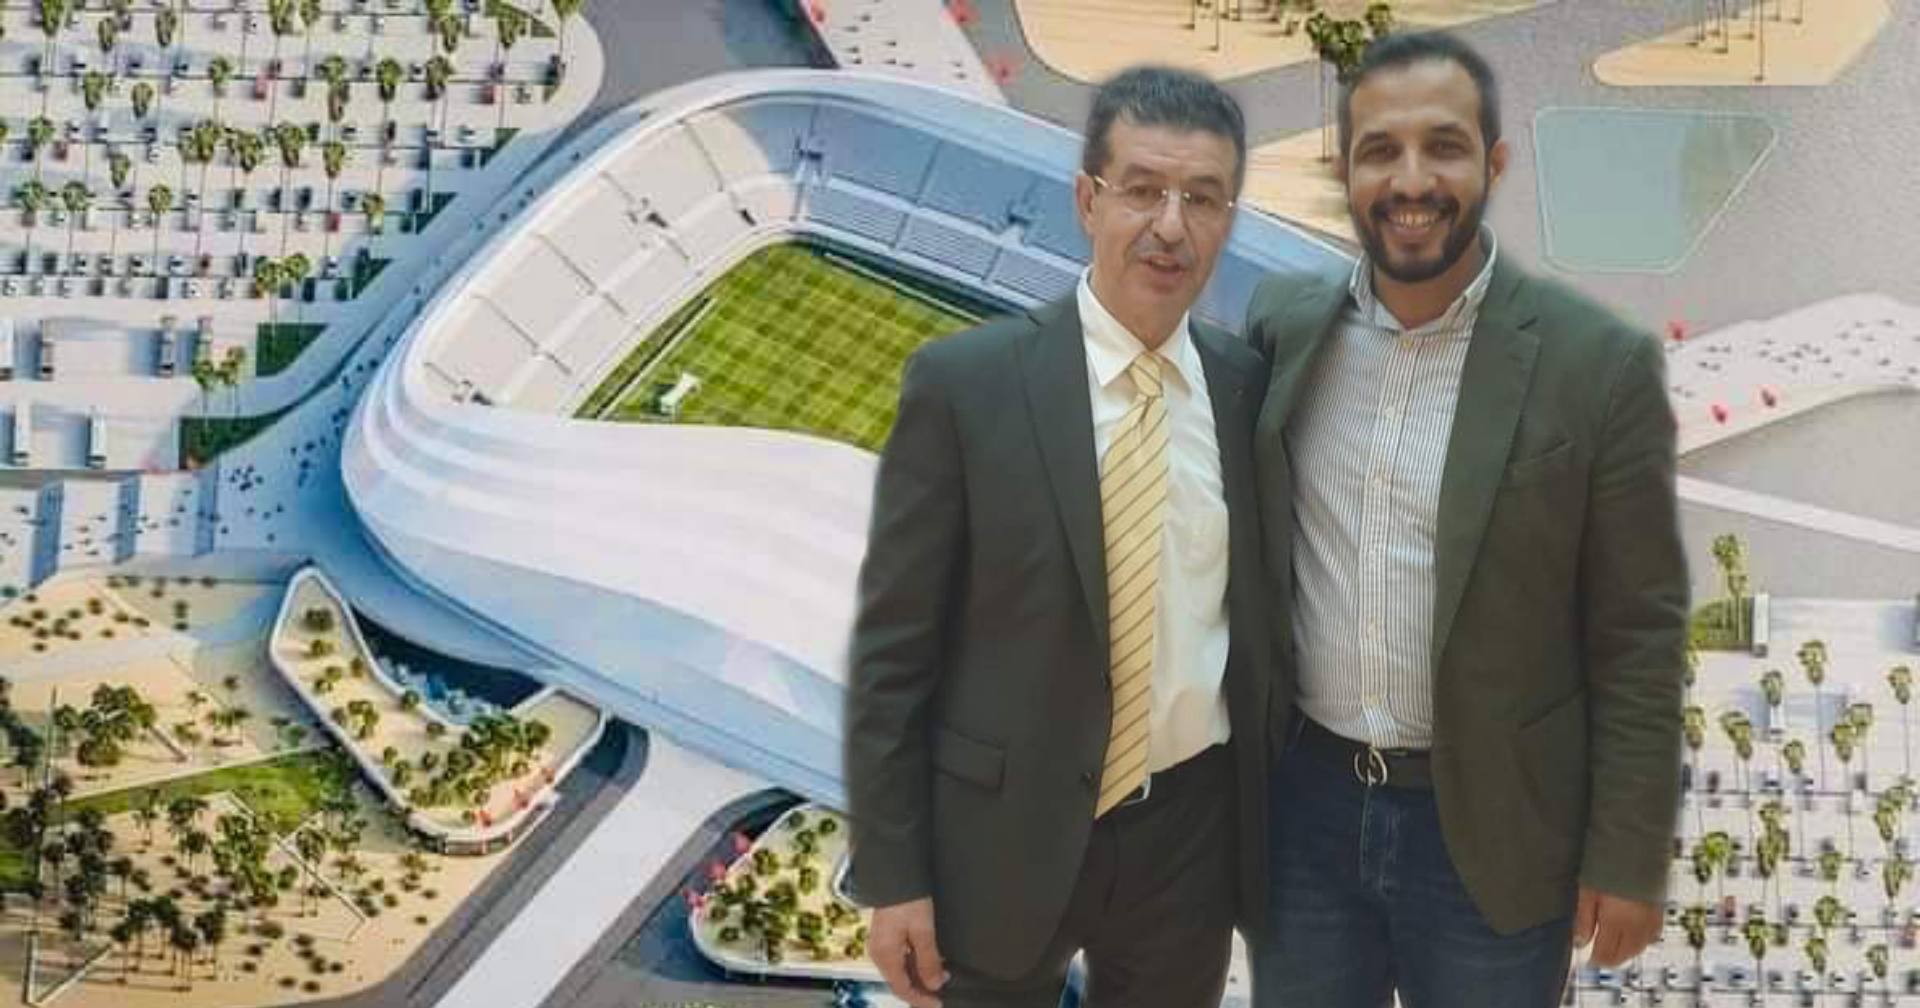    ‎ رئيس المجلس الجماعي للداخلة يلتقي رئيس البنيات التحتية بالجامعة الملكية المغربية لكرة القدم.  